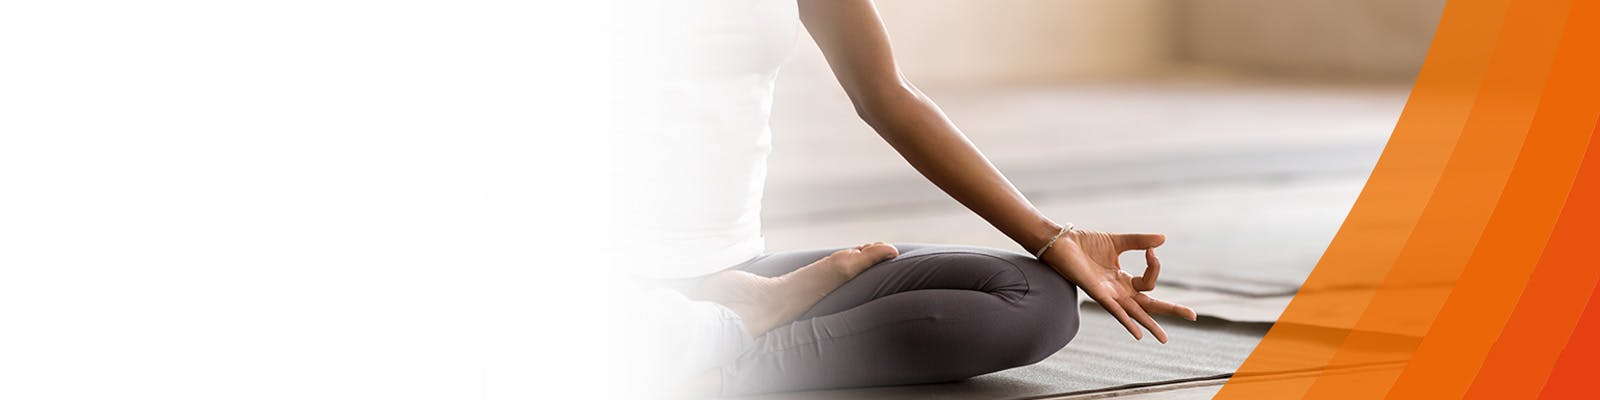 Een vrouw in een yogahouding met gekruiste benen